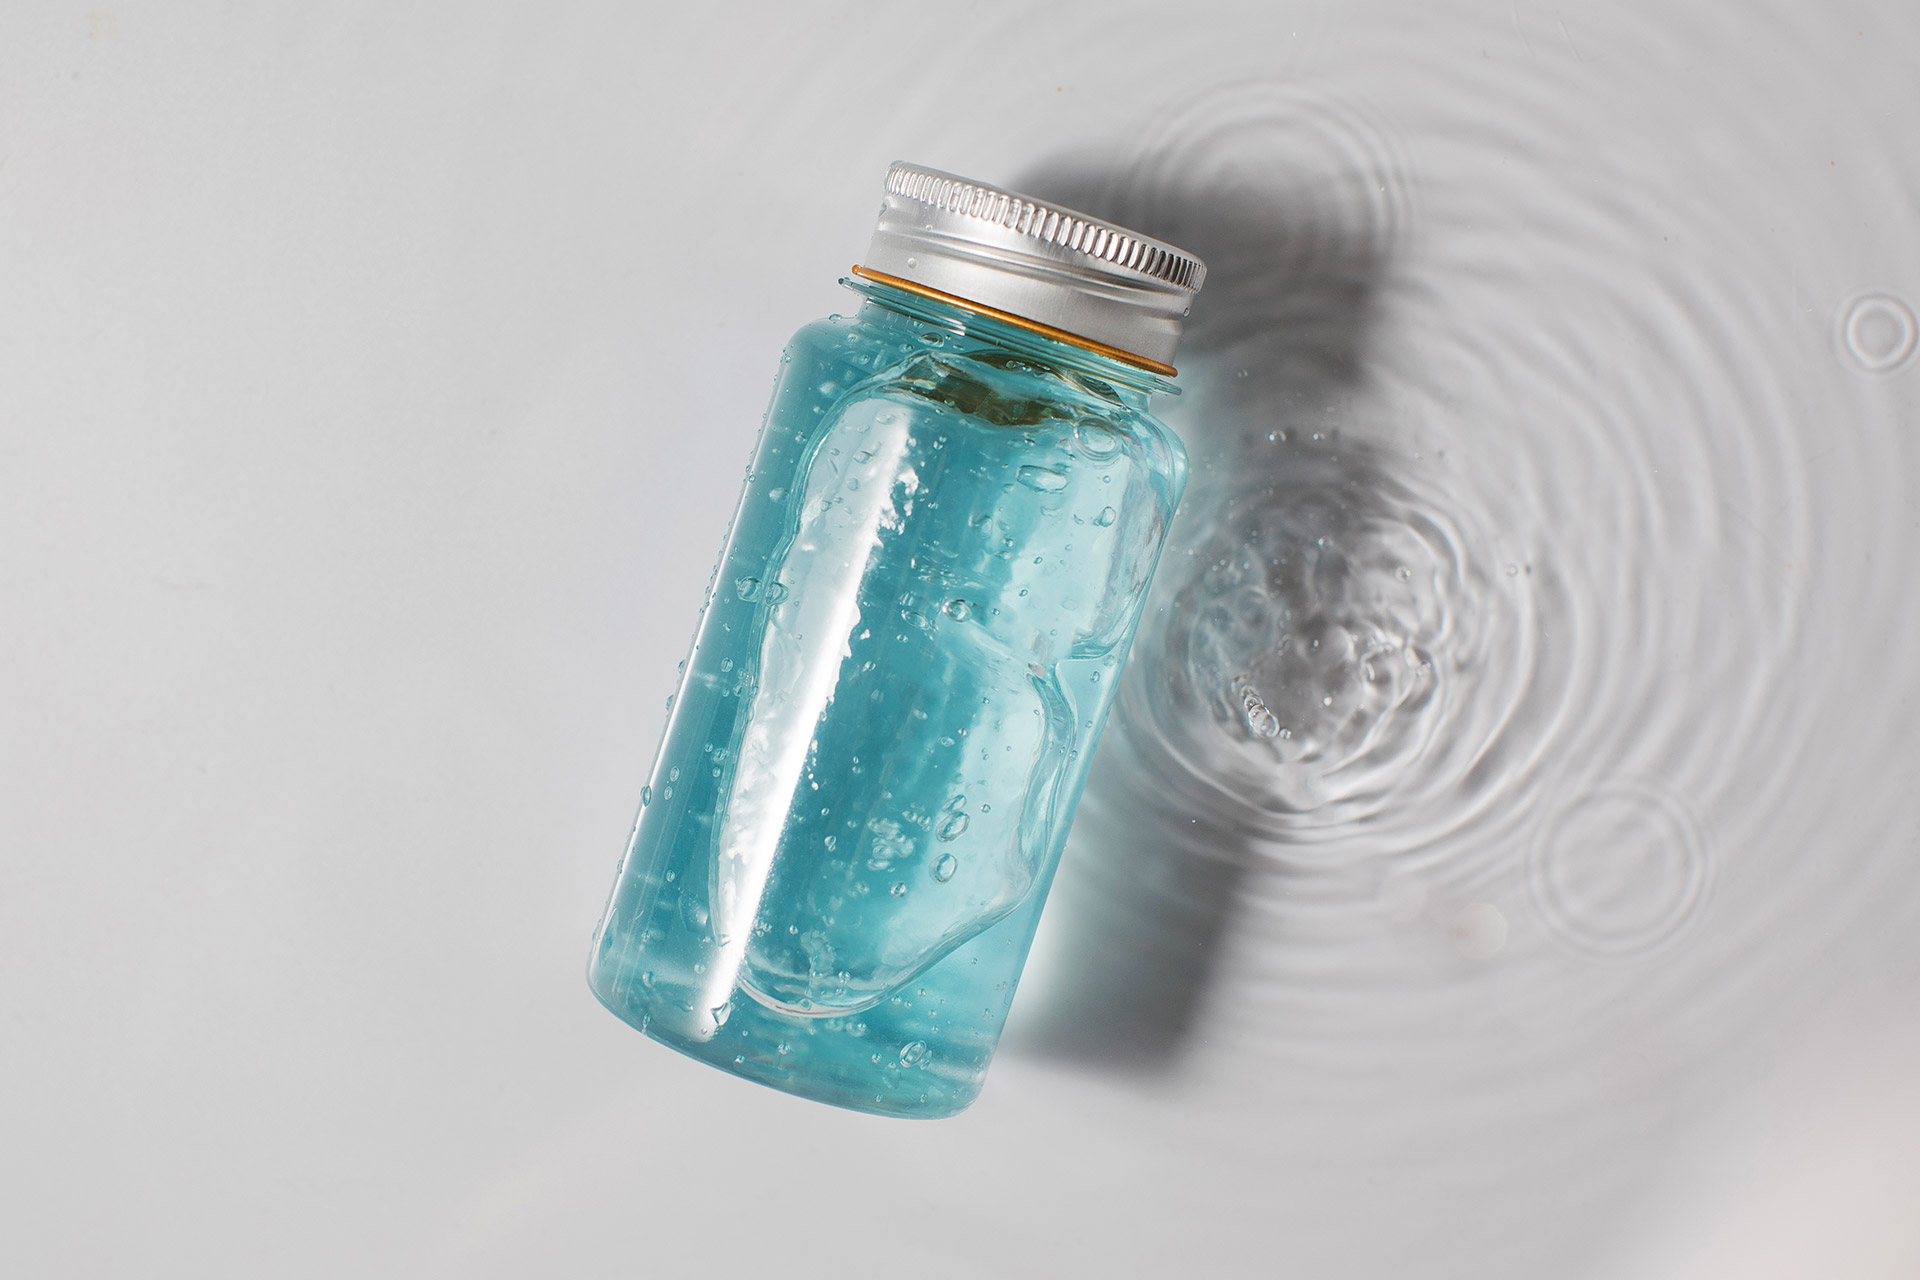 bottle-of-blue-gel-skincare-product-on-white-water-2022-01-26-16-15-55-utc.jpg